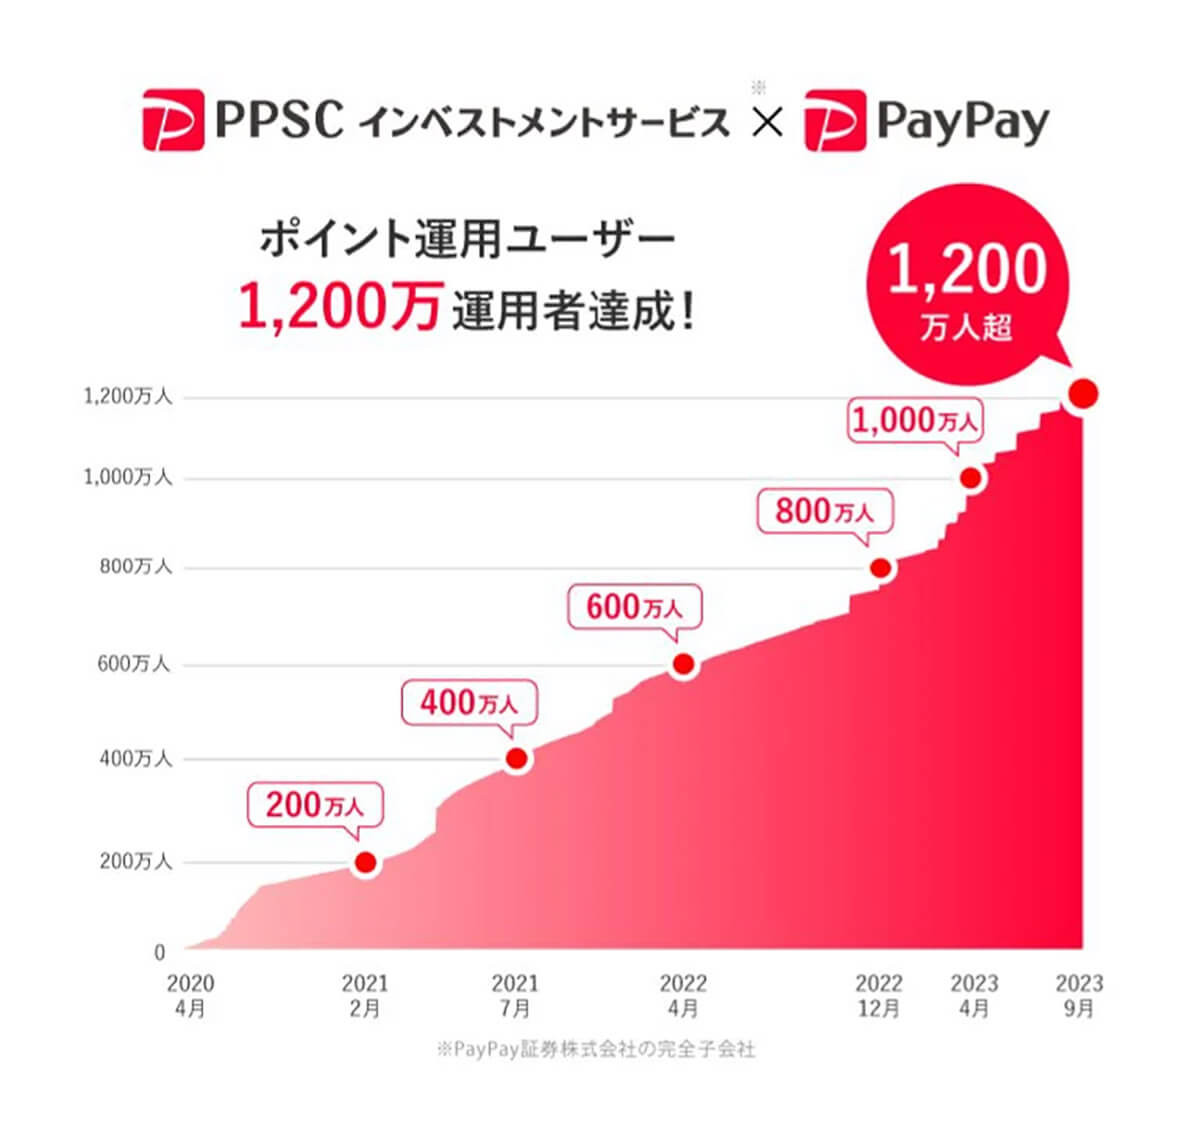 PayPay「ポイント運用」ユーザー数